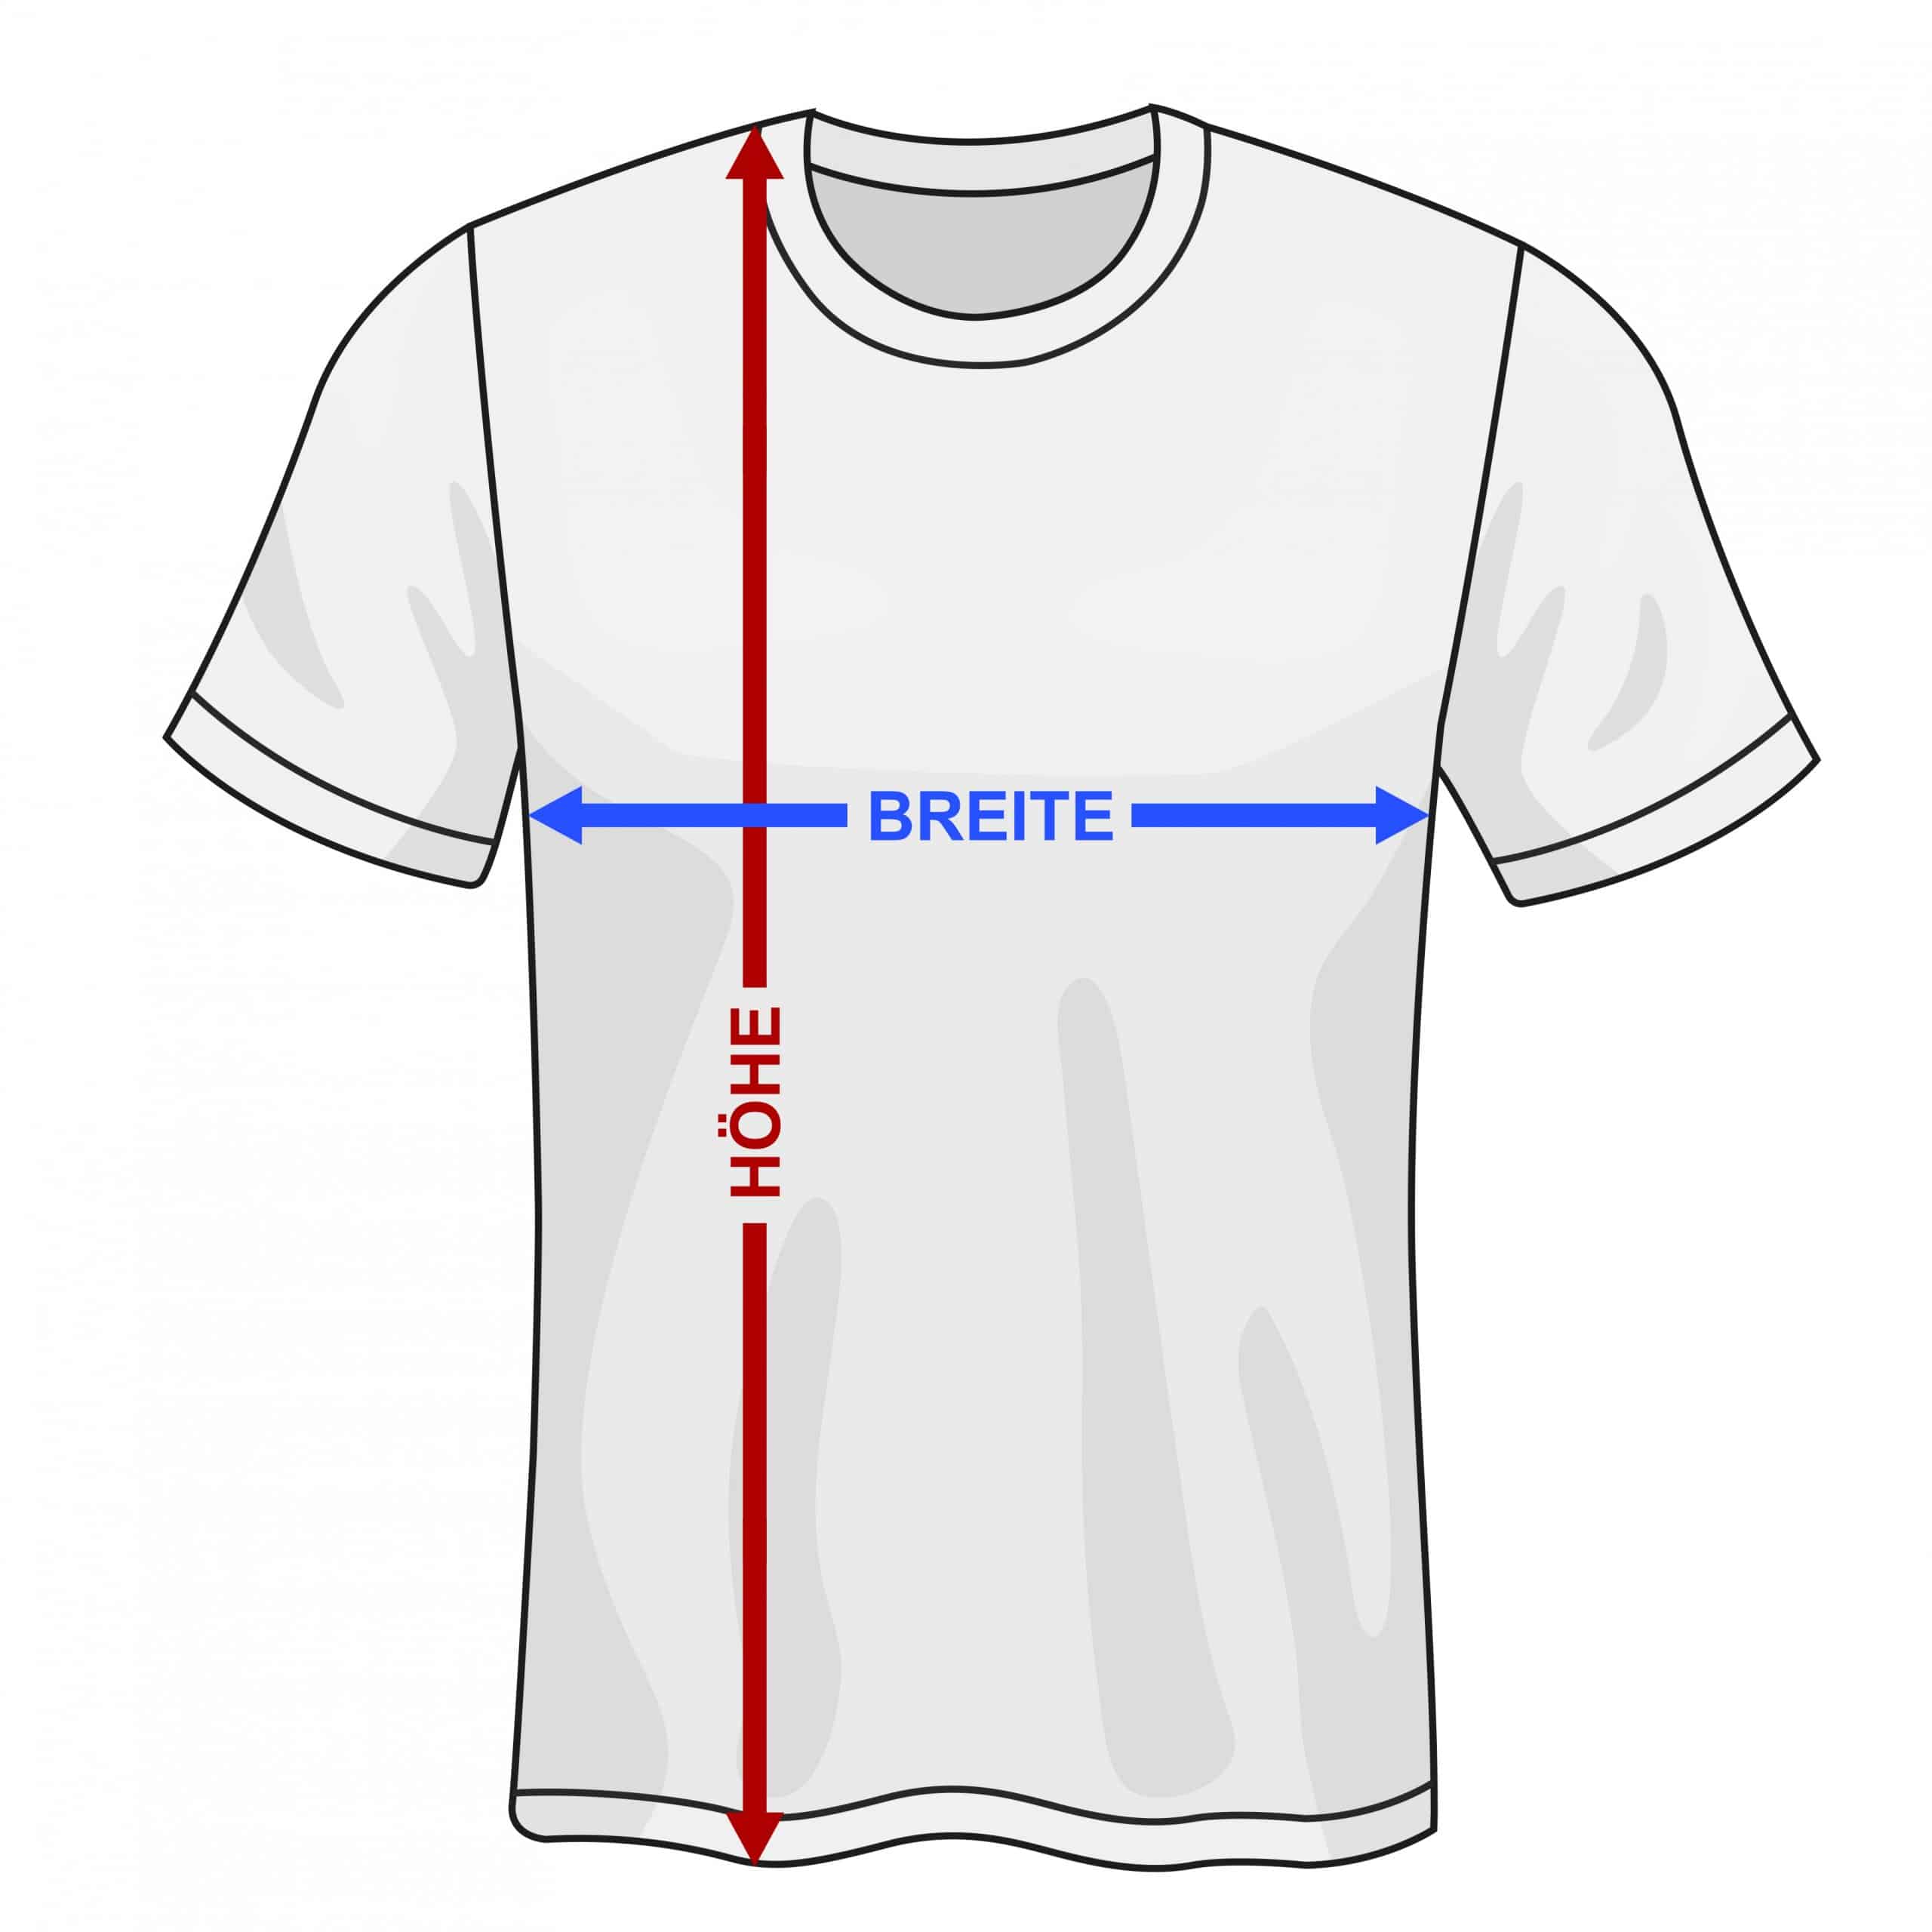 Women’s T-Shirts Shirts Size Chart